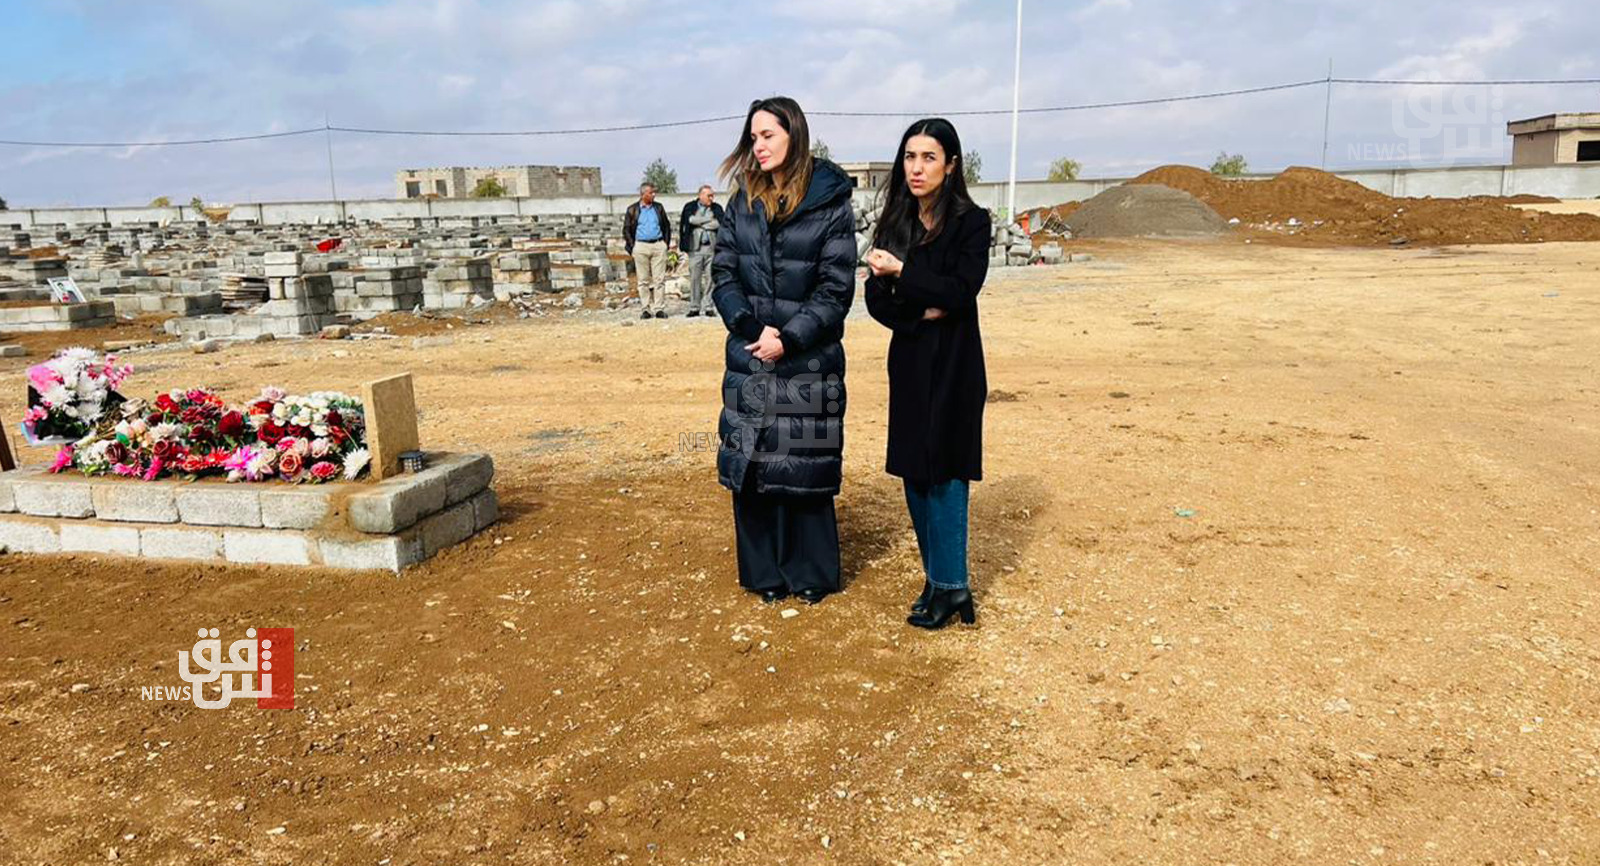 انجلينا جولي ونادية مراد والسفير الفرنسي يزورون قرية "كوجو" في سنجار